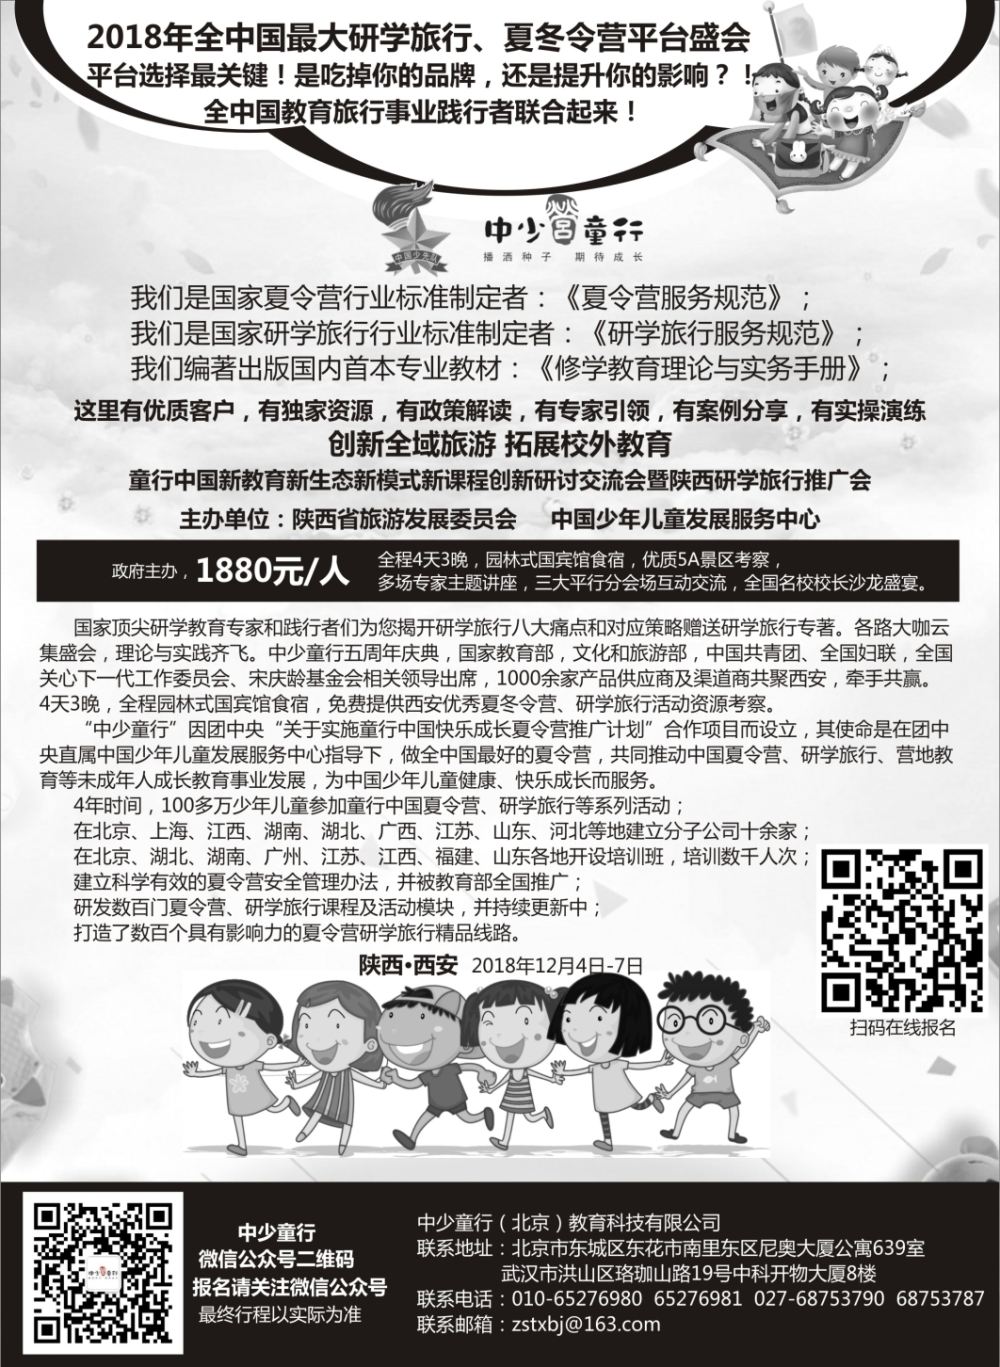 10童行中国夏令营推广计划2018年夏令营、研学旅行活动推介会